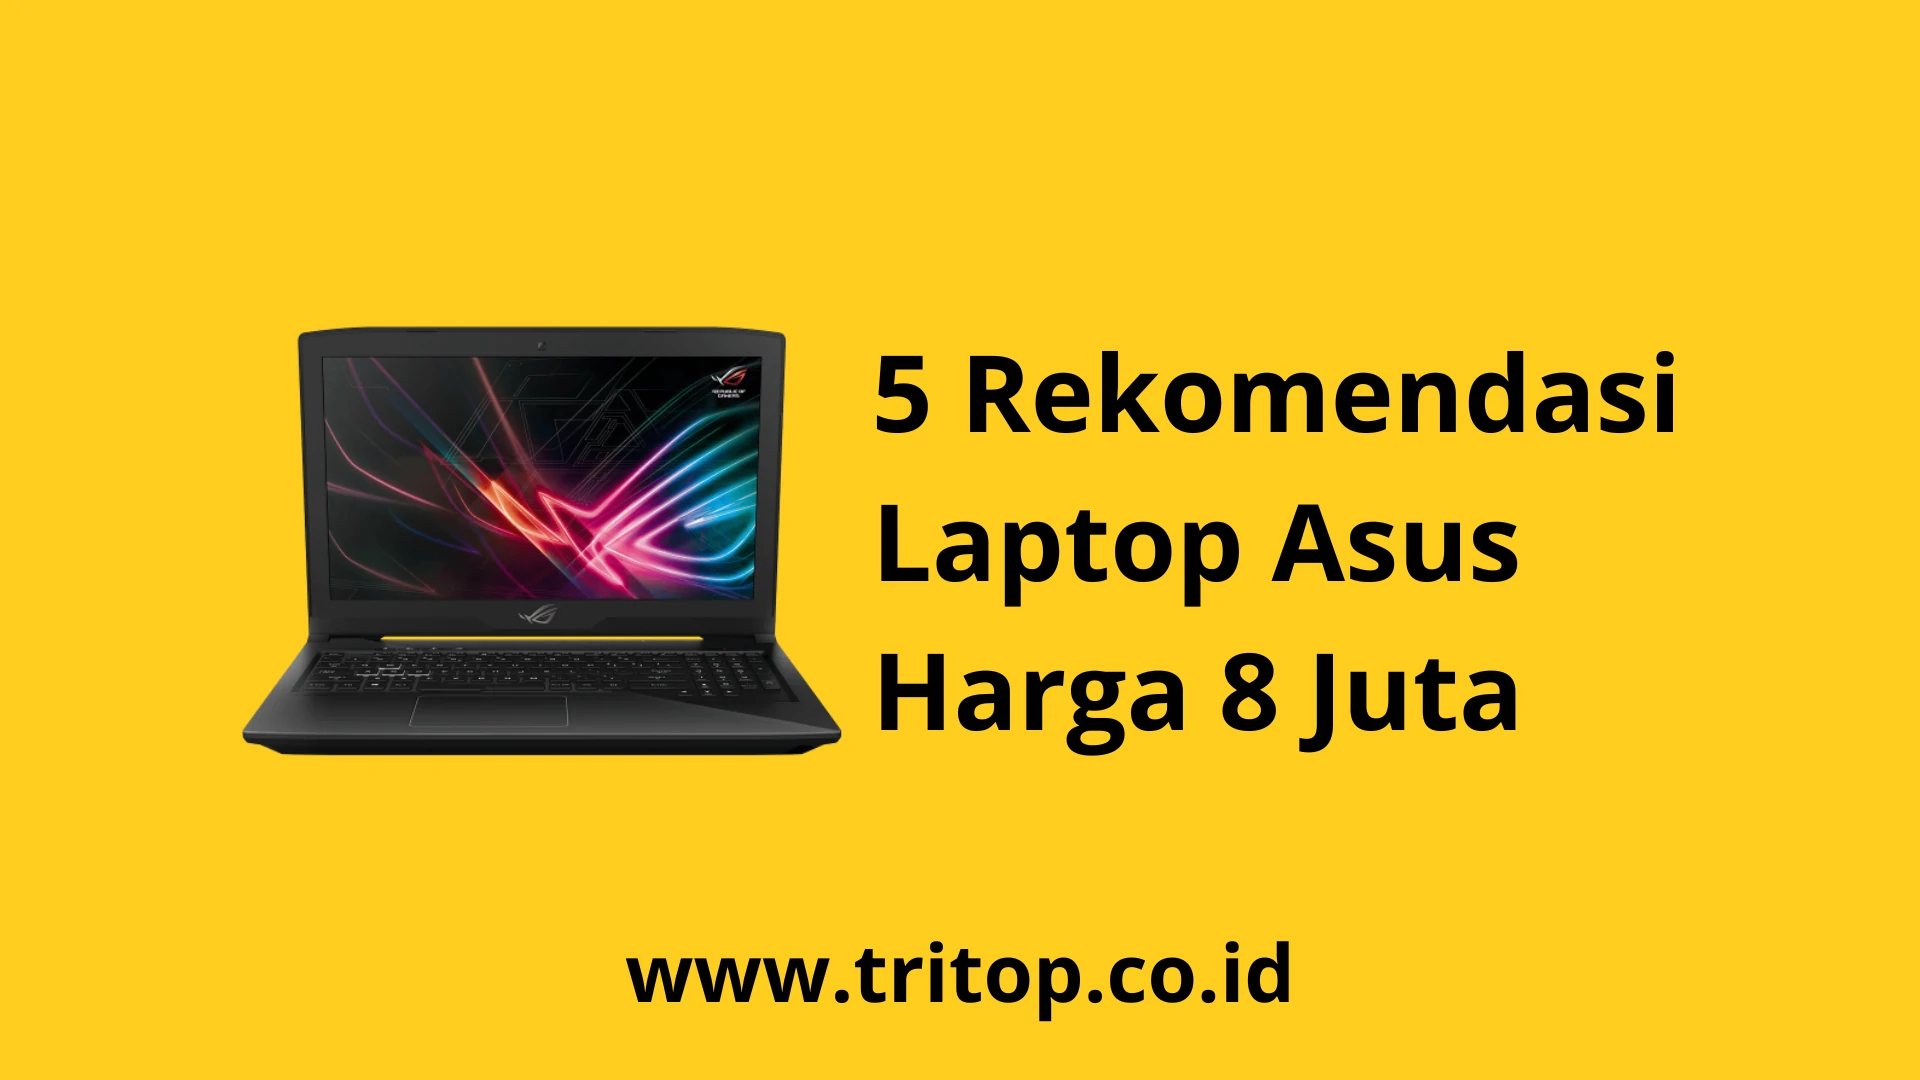 Laptop Asus 8 Juta Tritop.co.id